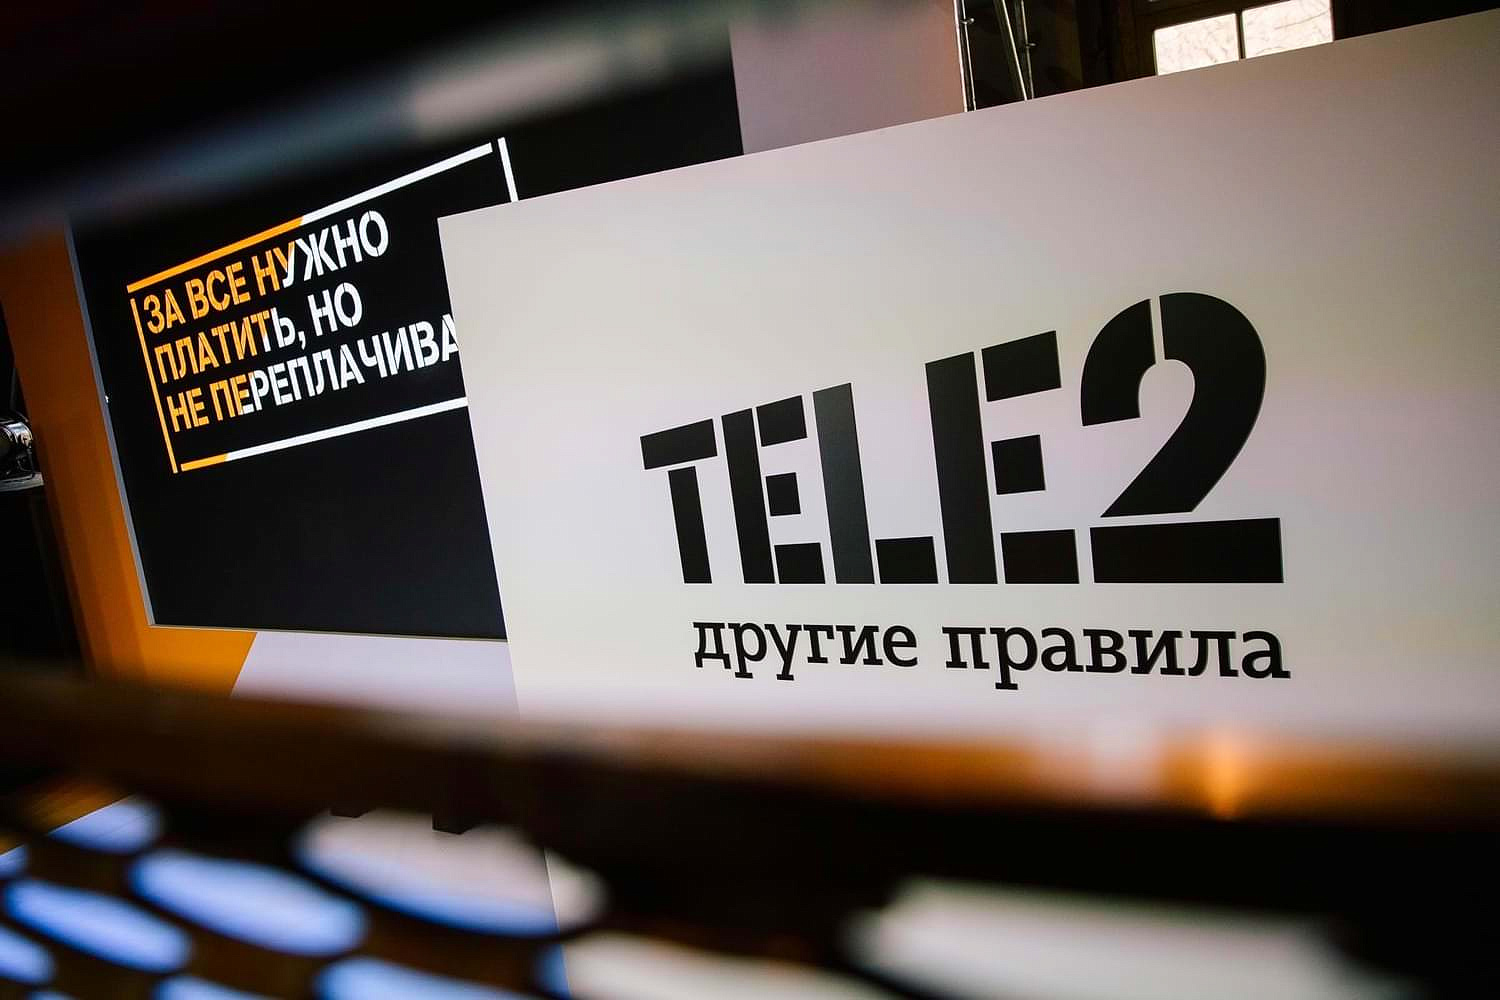   Tele2   